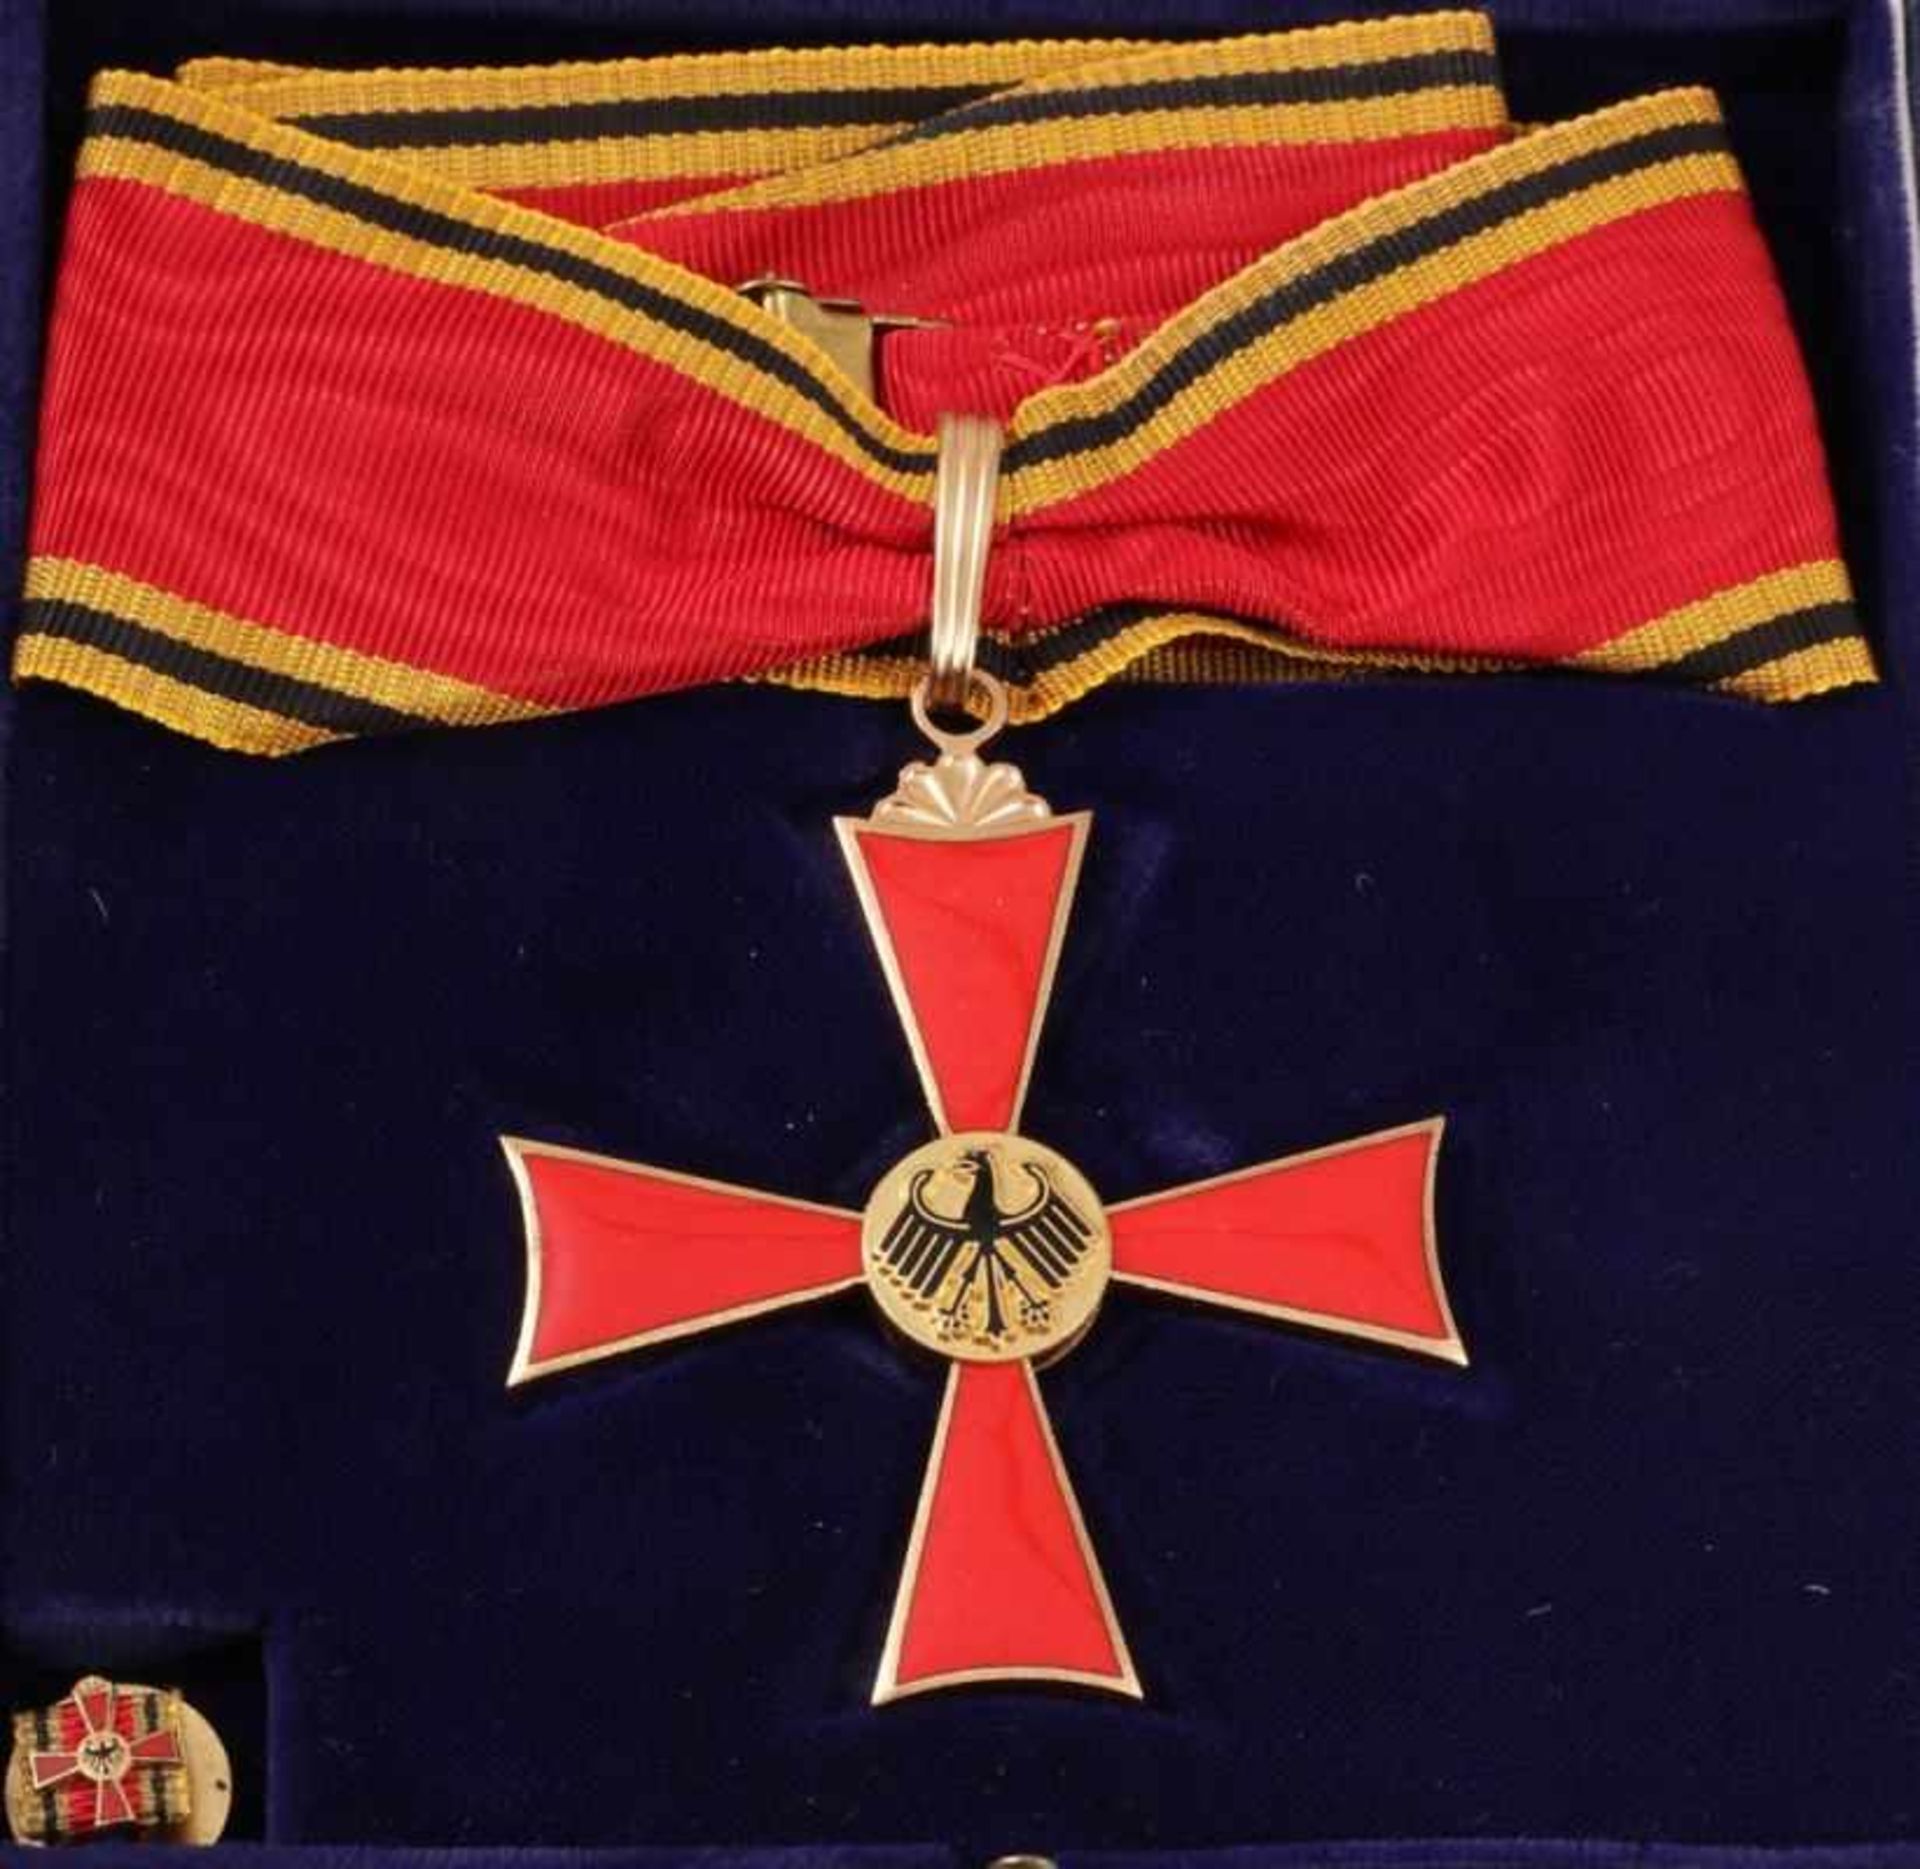 Das Große Verdienstkreuz des Verdienstordens der Bundesrepublik Deutschland imVerleihungsetui - Image 2 of 2